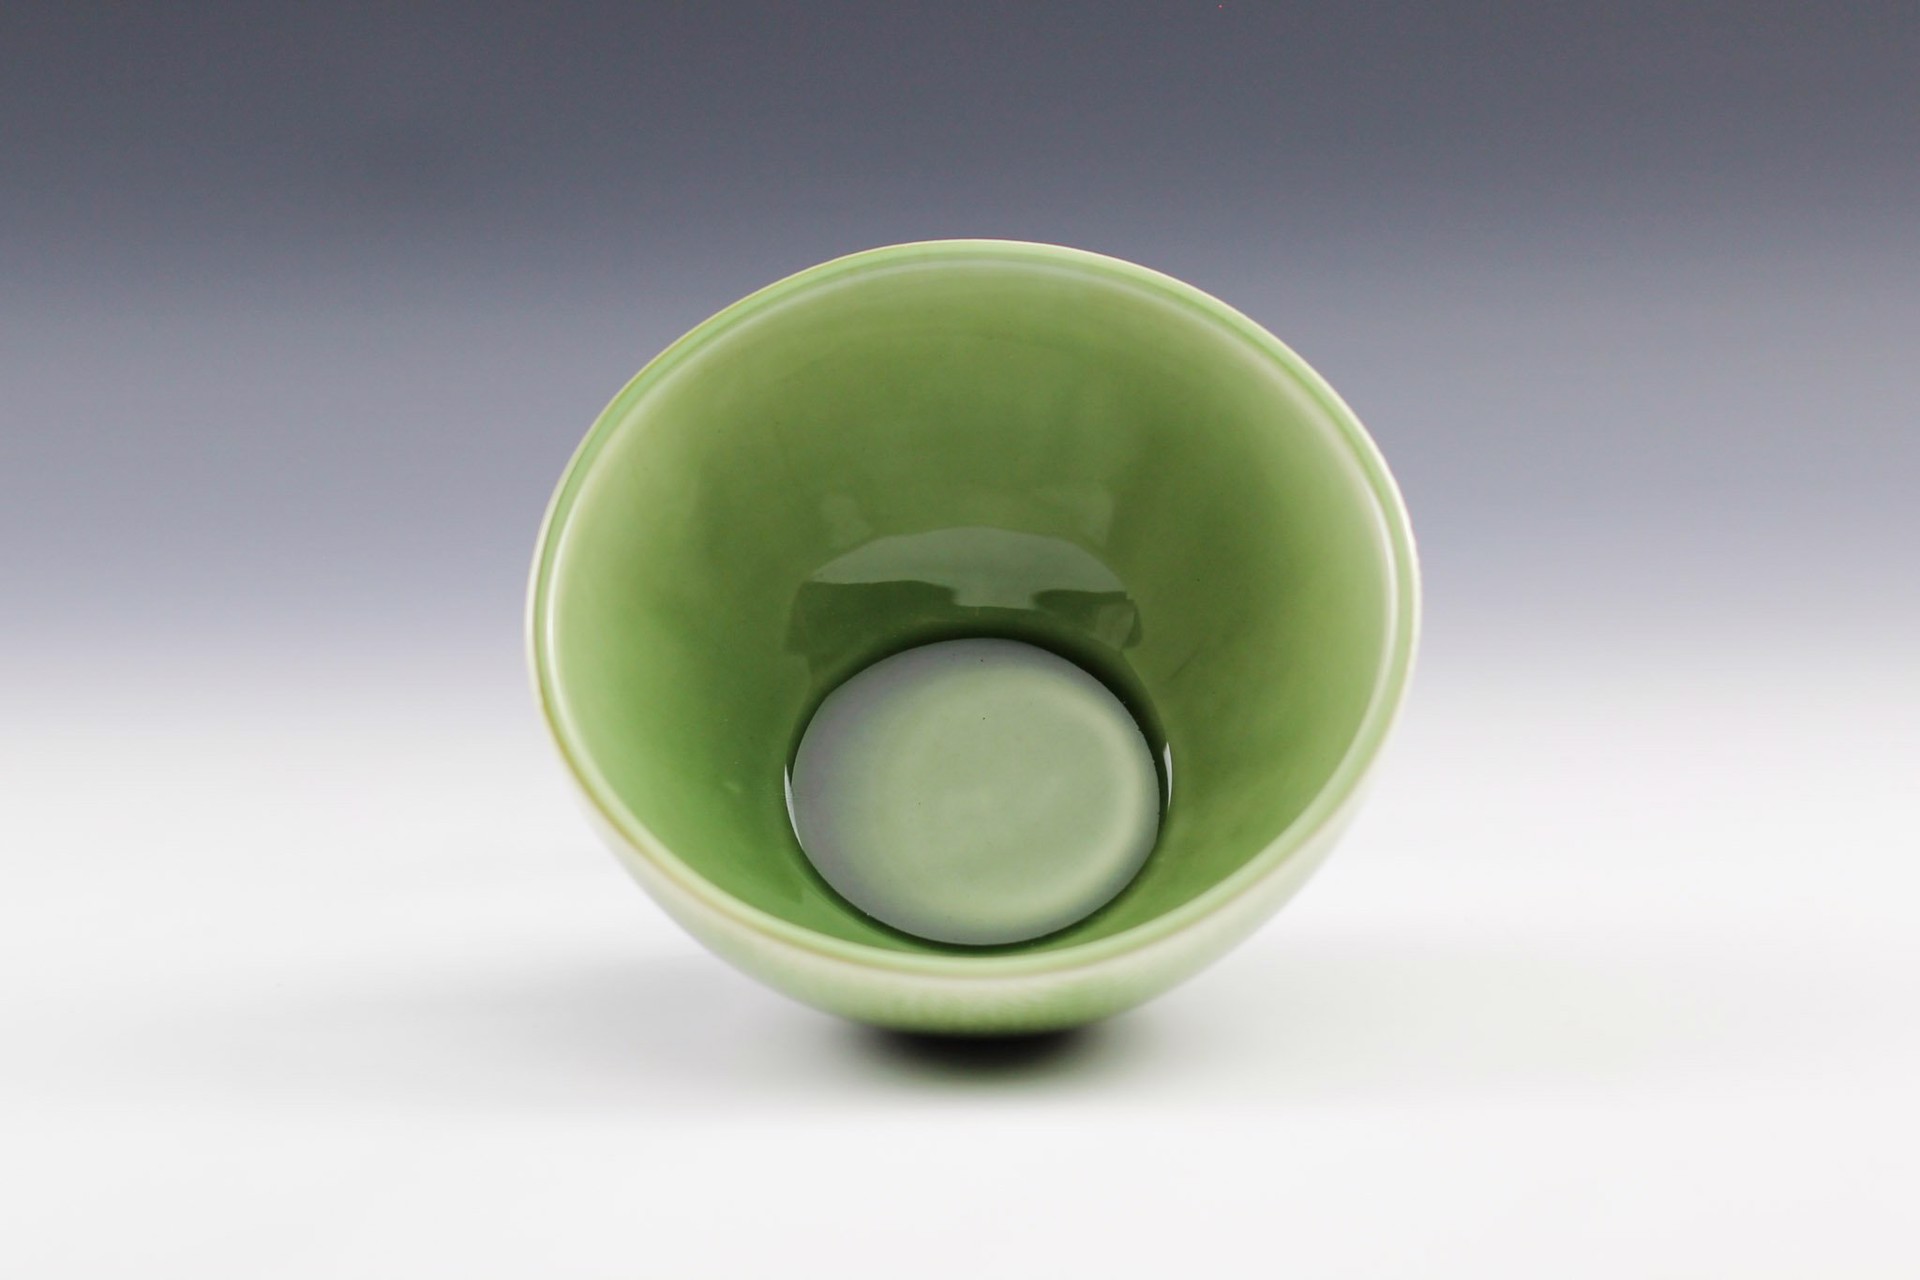 Small Bowl by Jeff Campana